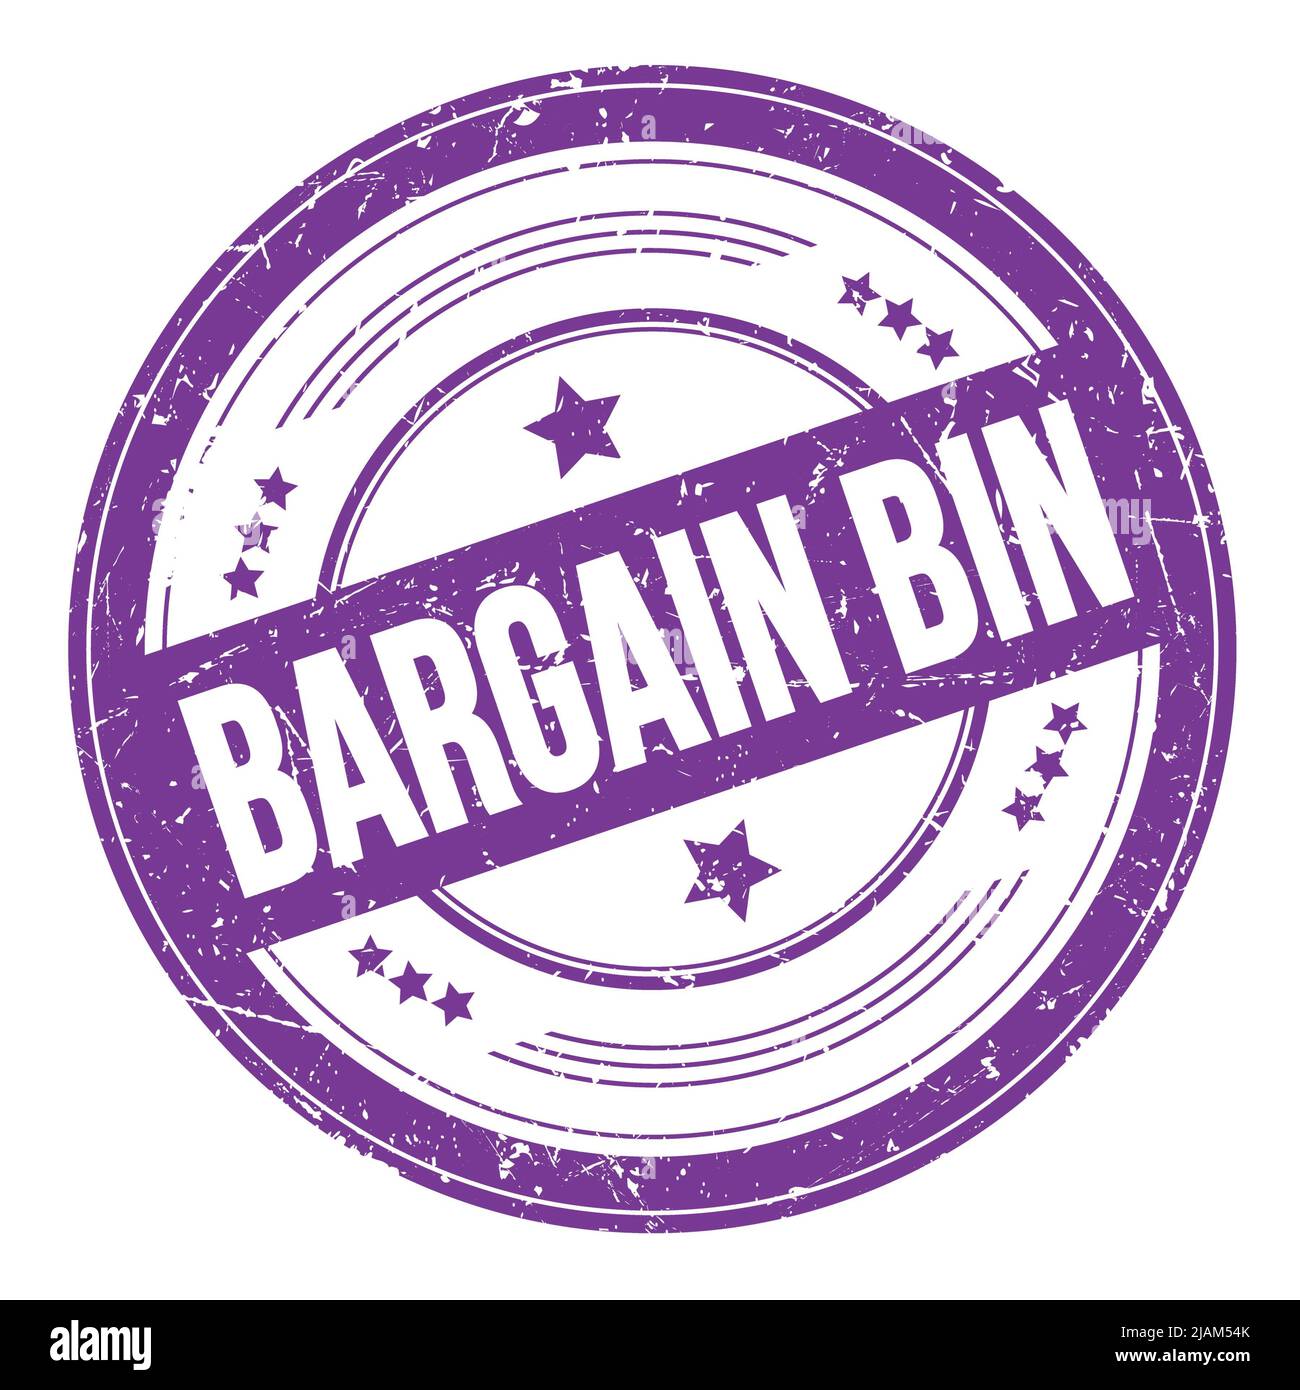 BARGAIN BIN text on violet indigo round grungy texture stamp. Stock Photo